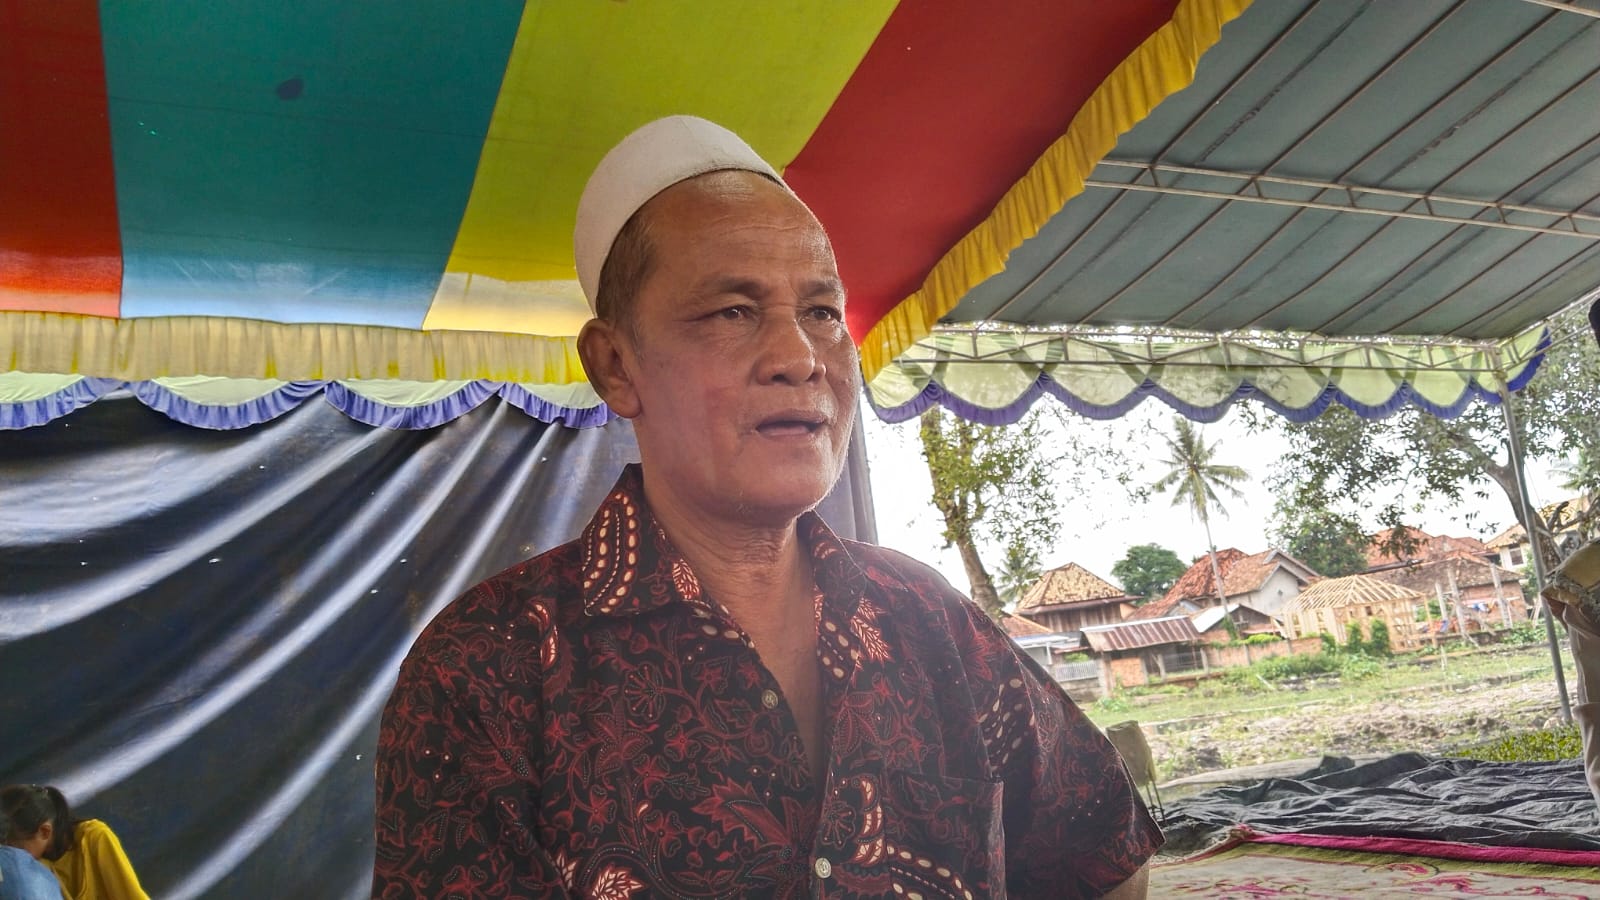 Cerita Kakek Hattani Tersesat 24 Jam di Hutan Keramat, Bergulat dengan Buaya dan Diganggu Makhluk Bertaring